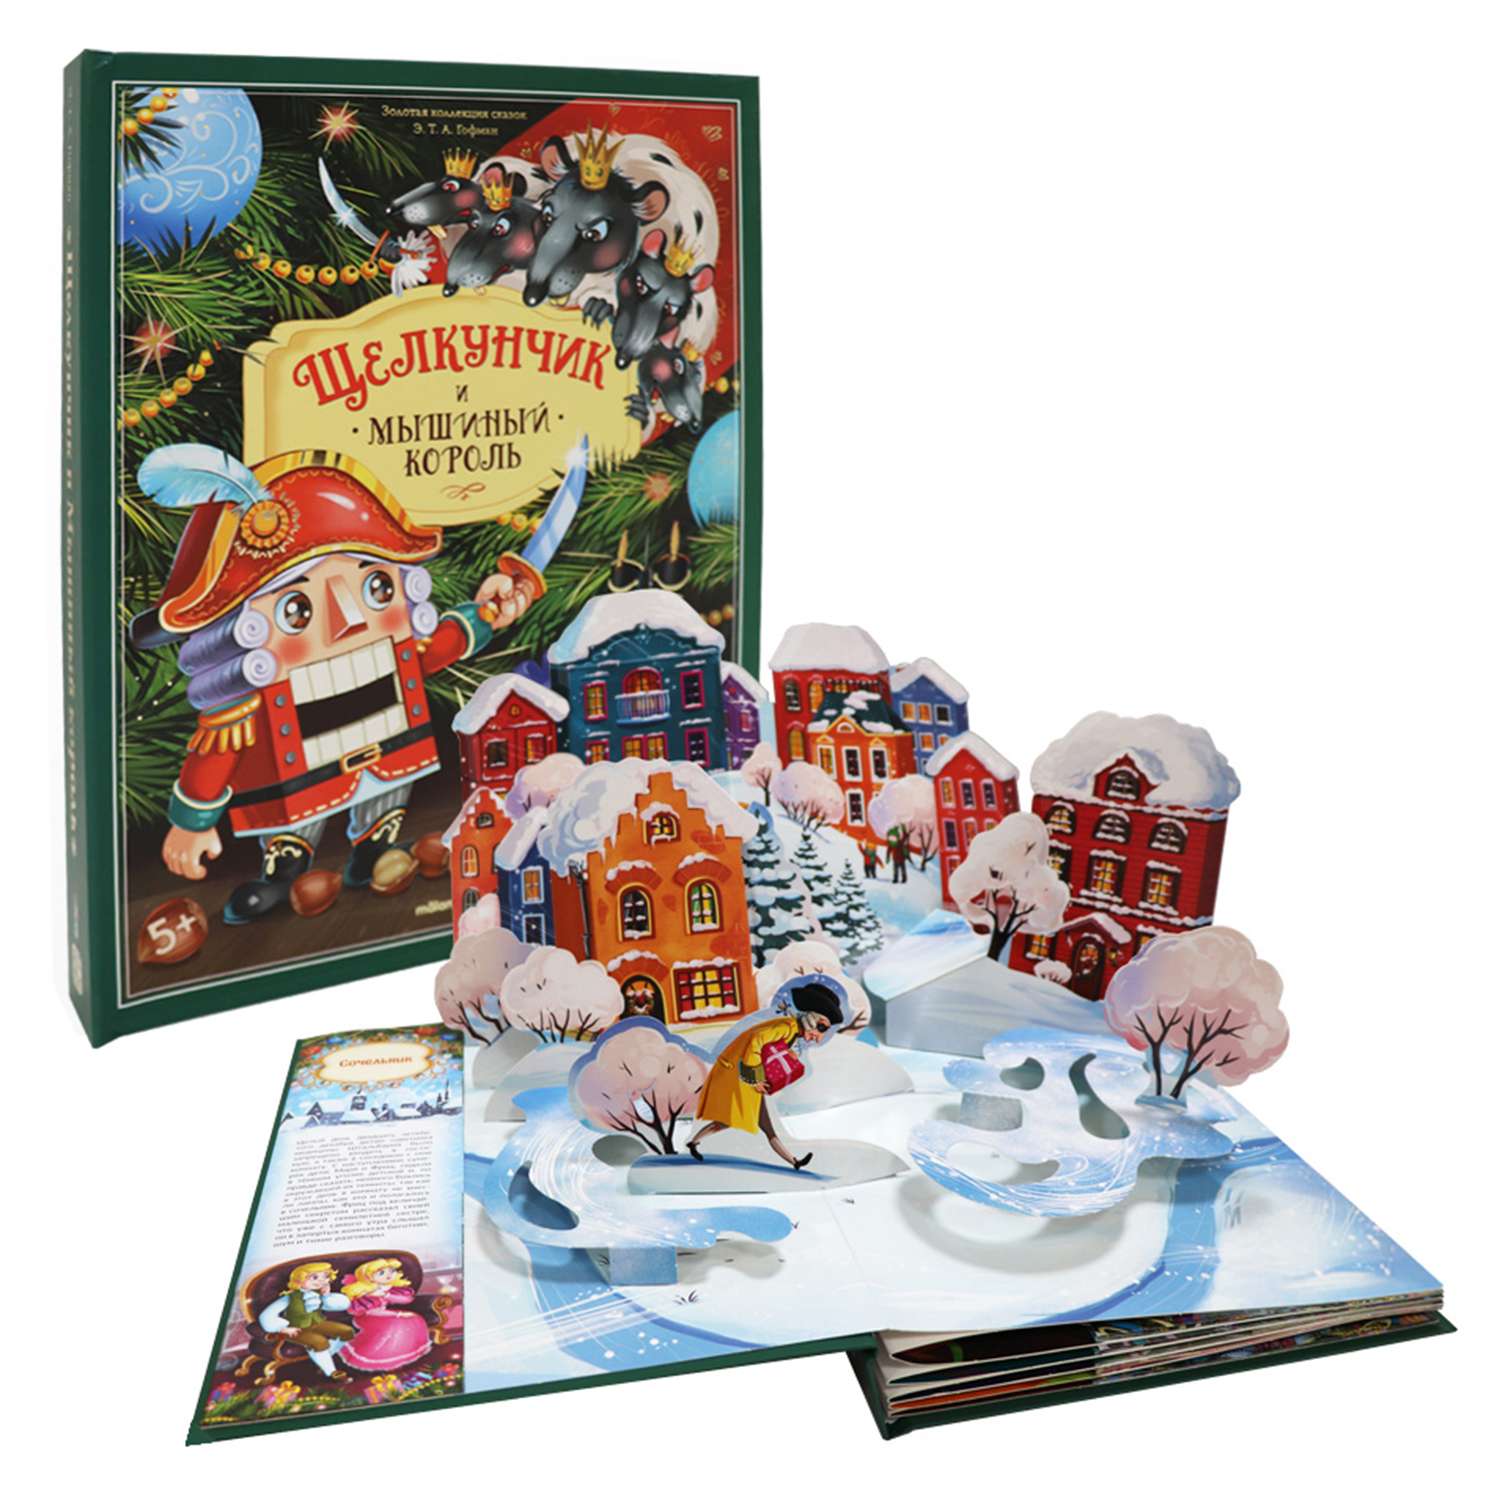 Детская Художественная Книга Malamalama Щелкунчик и Мышиный король с объемными картинками - фото 1